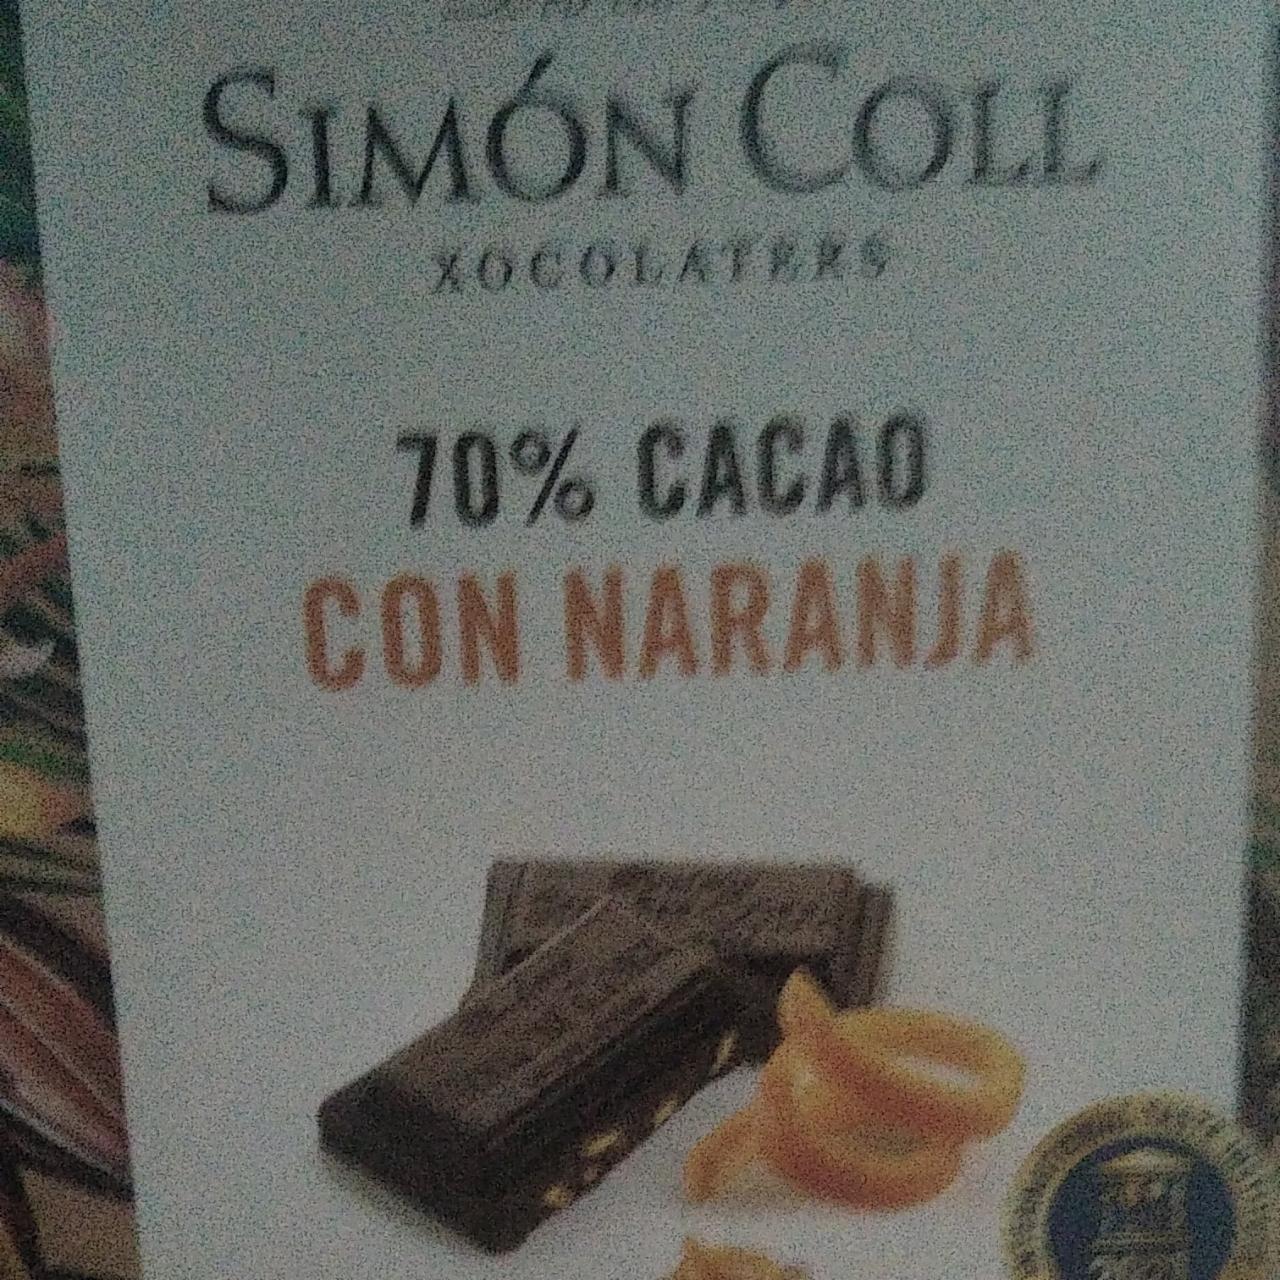 Fotografie - 70% Cacao con Naranja Simón Coll